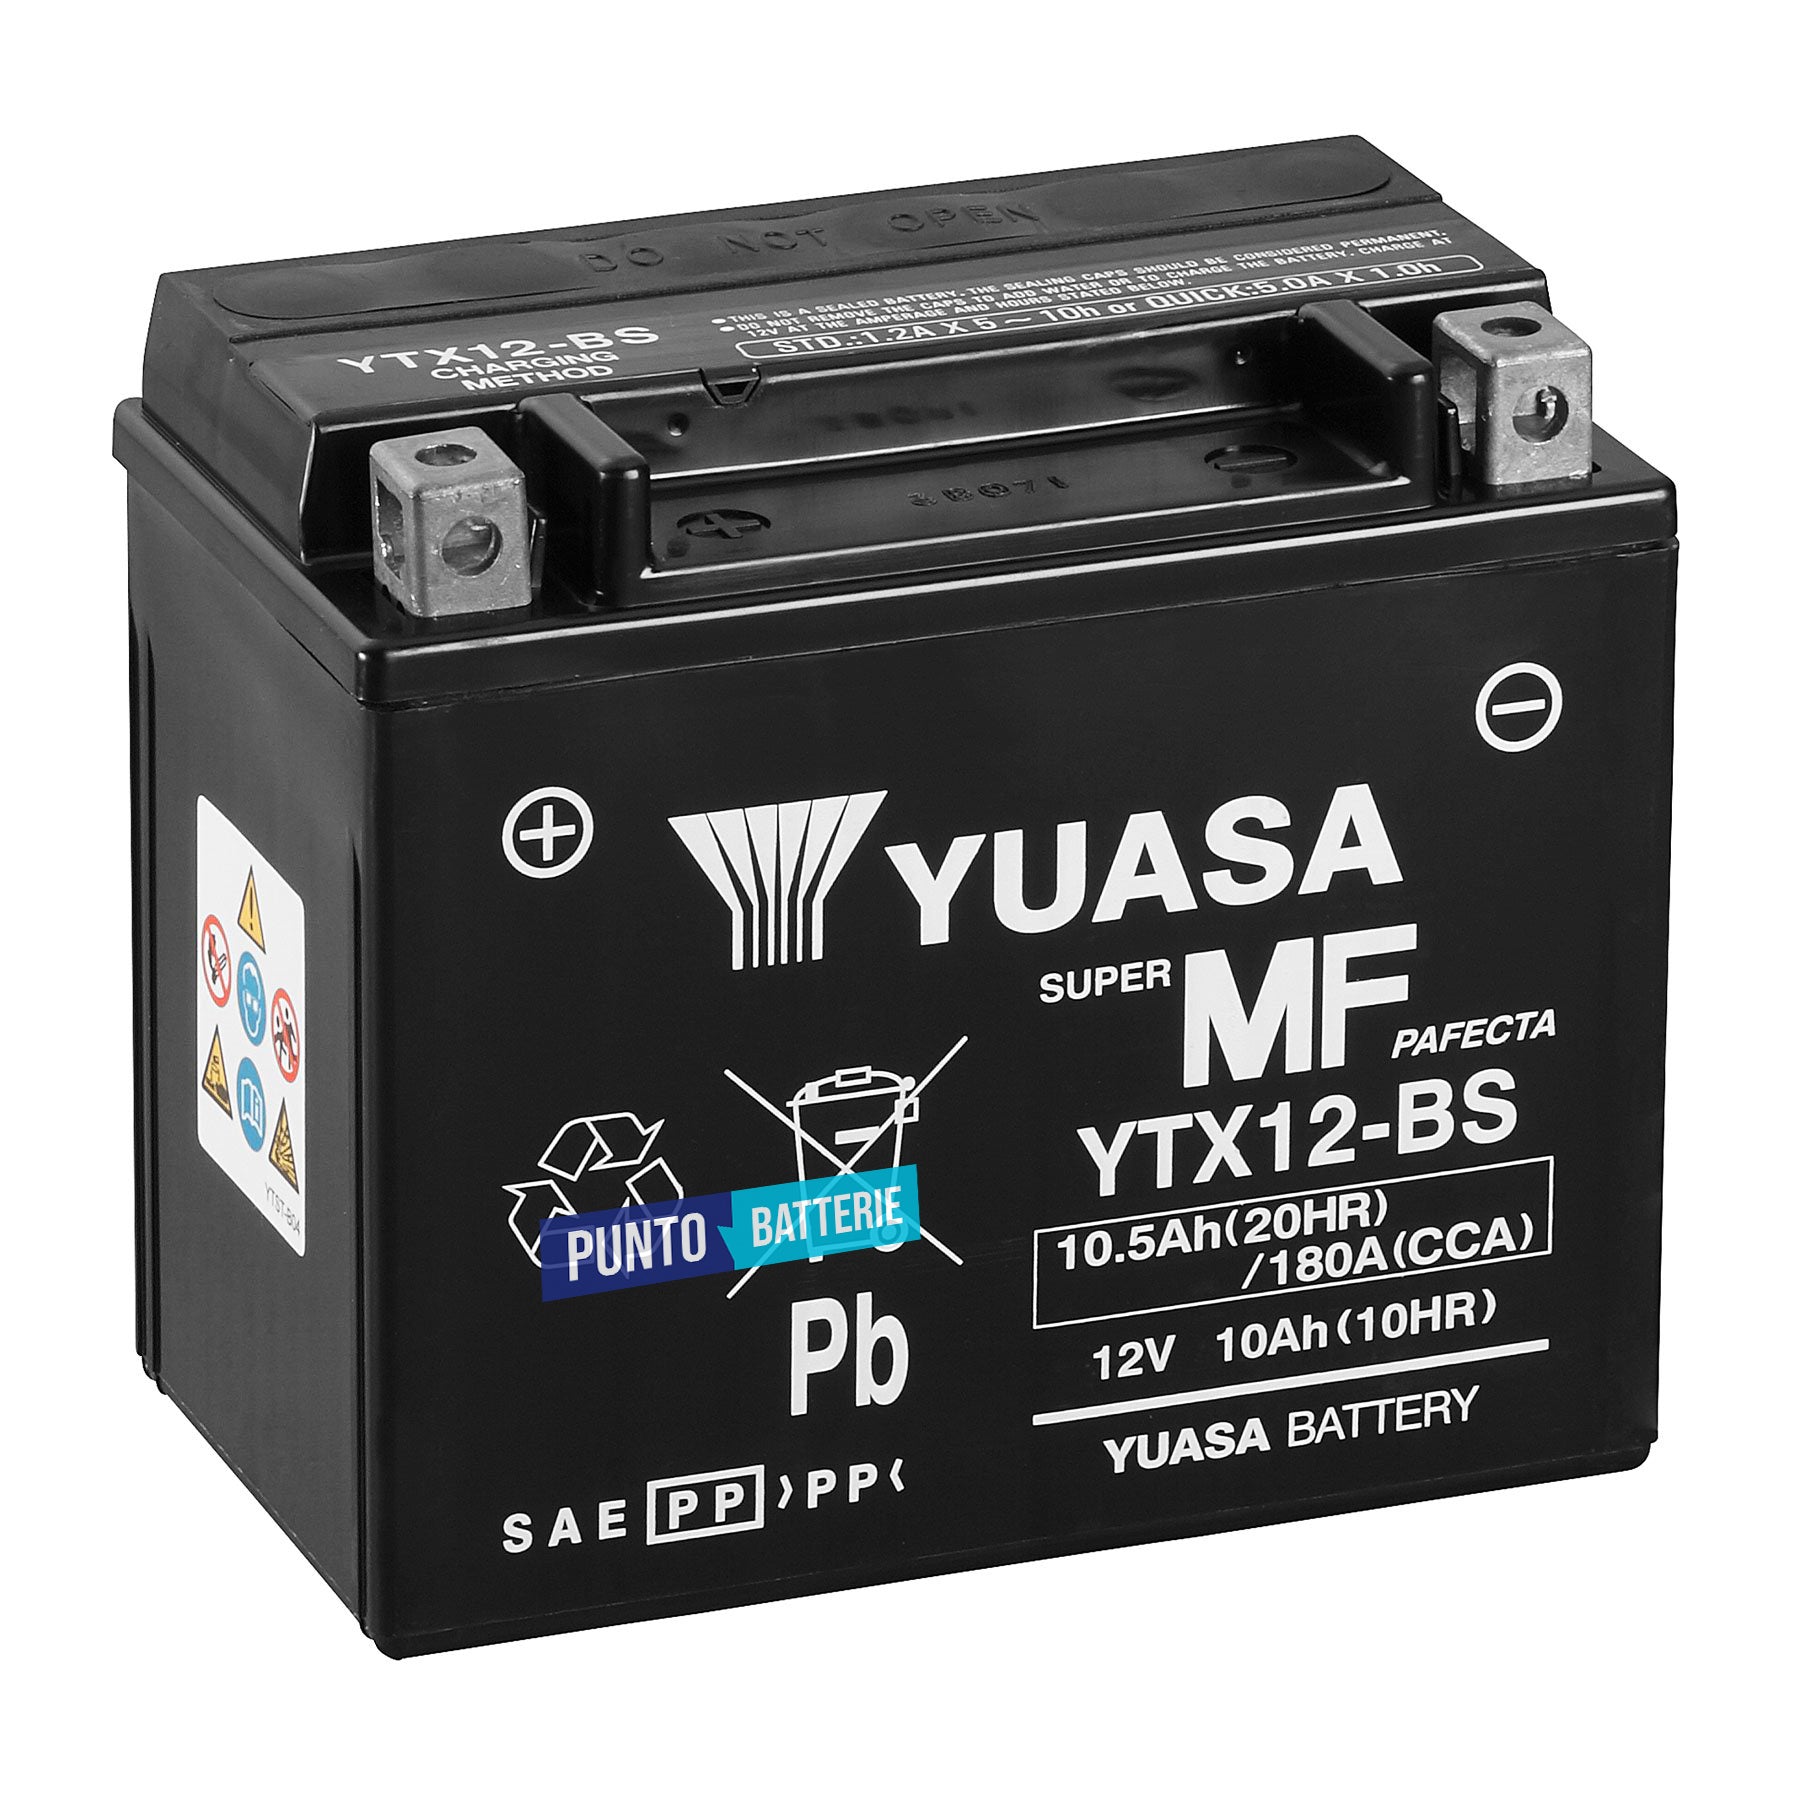 Batteria originale Yuasa YTX YTX12-BS, dimensioni 150 x 87 x 130, polo positivo a sinistra, 12 volt, 10 amperora, 180 ampere. Batteria per moto, scooter e powersport.